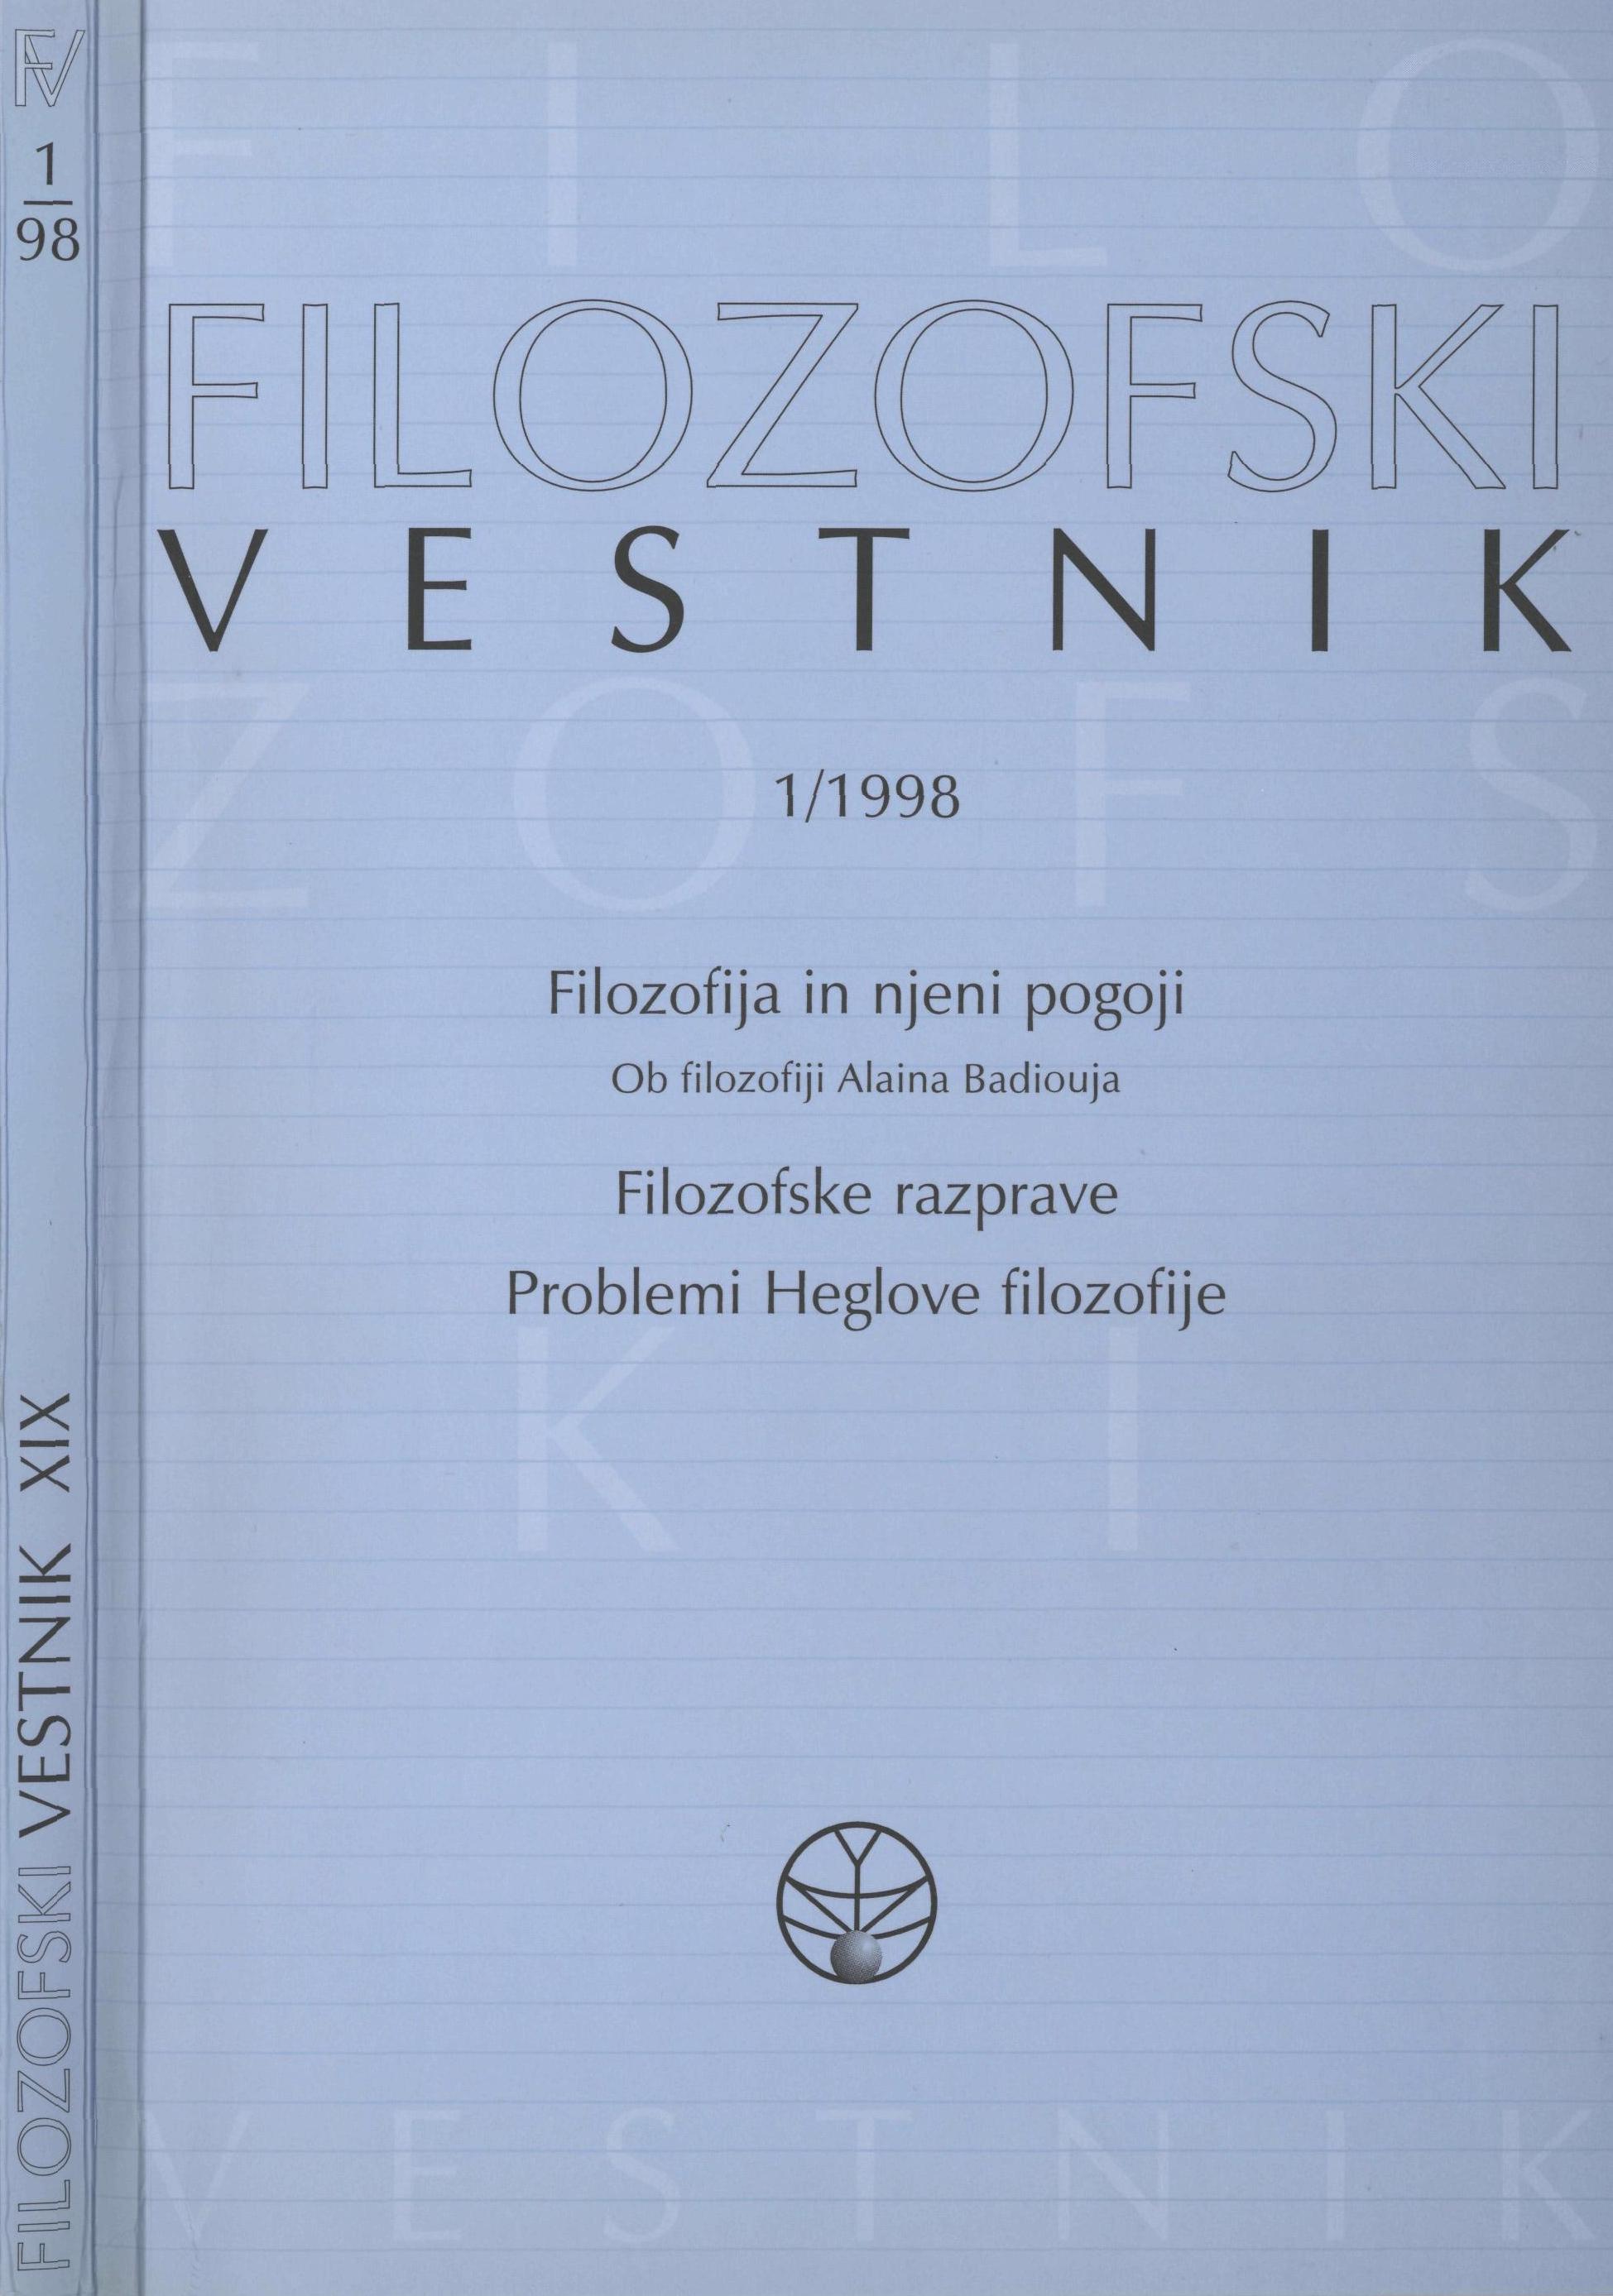 					View Vol. 19 No. 1 (1998): Filozofija in njeni pogoji (Badiou), Filozofske razprave, Problemi Heglovske filozofije
				